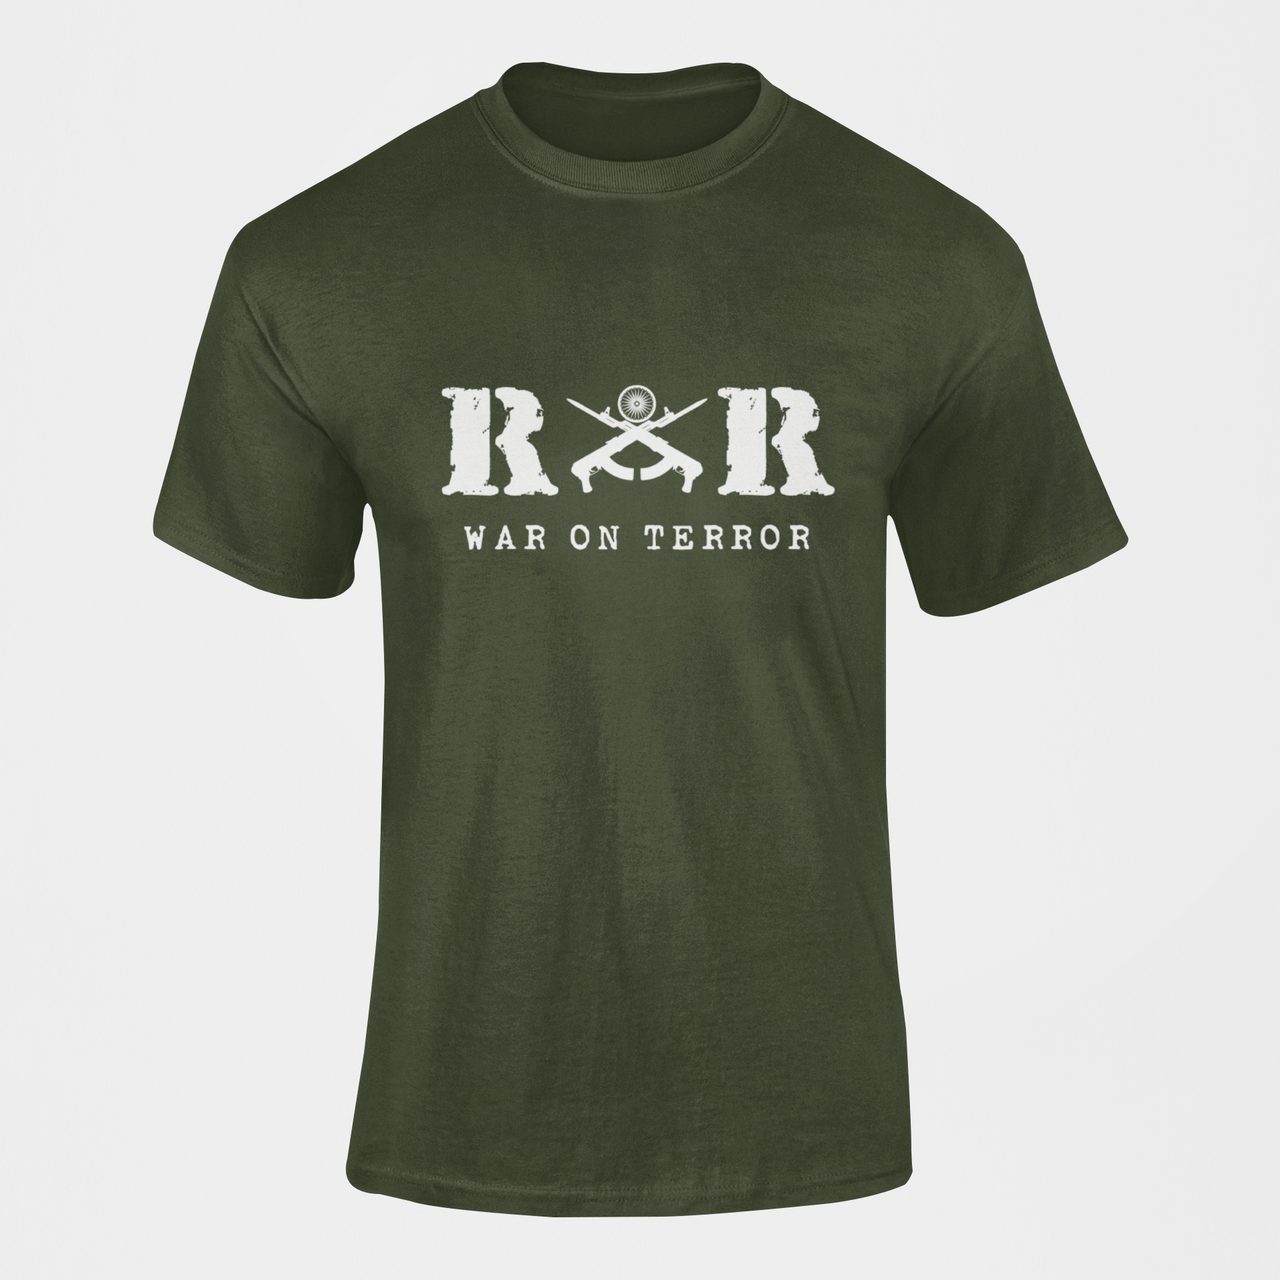 Rashtriya Rifles T-shirt - RR War on Terror ( Men)